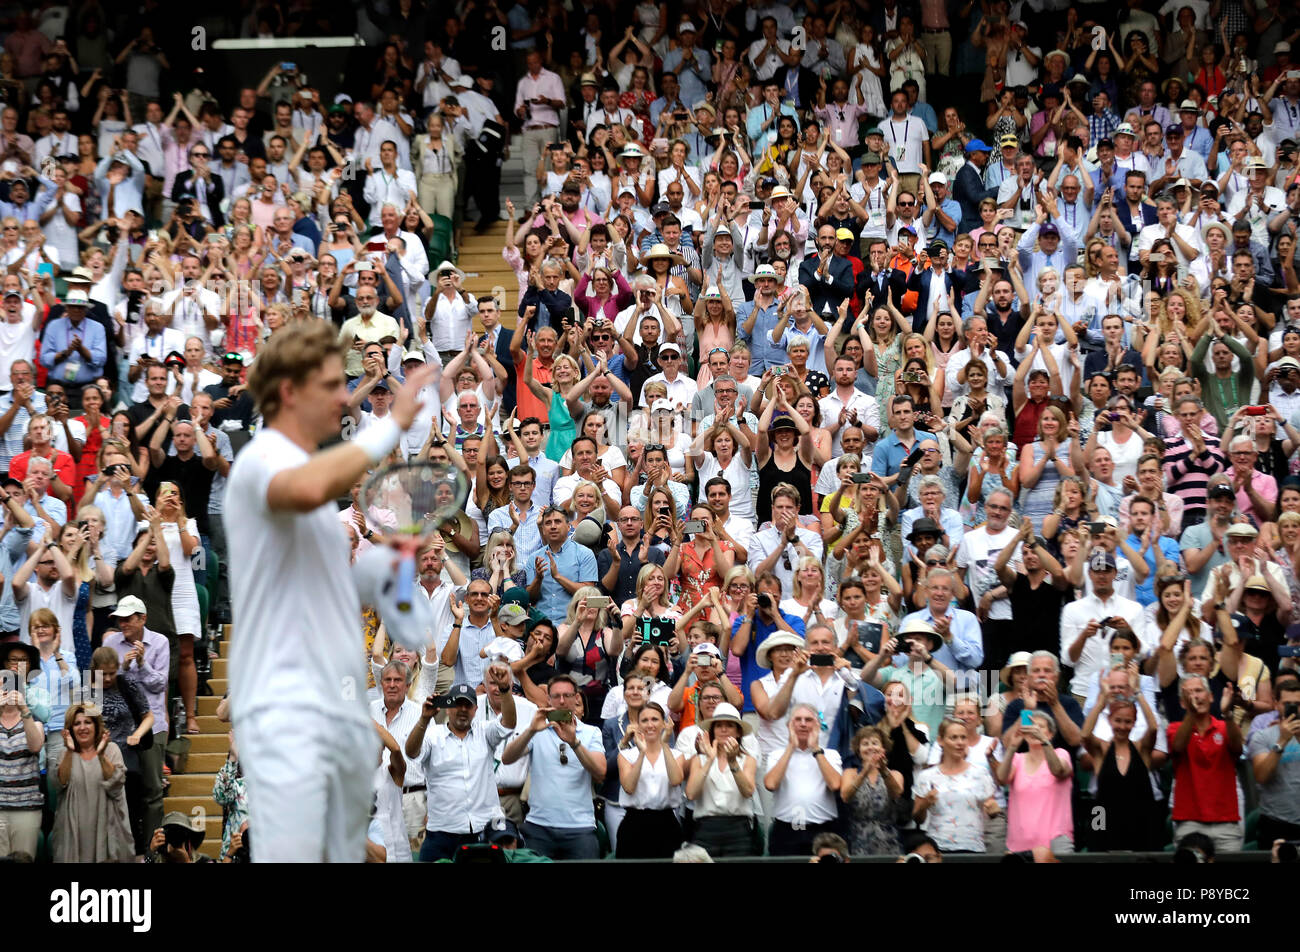 L'ottavo seme sudafricano Kevin Anderson festeggia di aver raggiunto la sua prima finale di Wimbledon, Battendo il nono seme americano John Isner 7-6 (8/6) 6-7 (5/7) 6-7 (9/11) 6-4 26-24 nella semifinale più lunga della storia del torneo, il giorno undici del Wimbledon Championships al All England Lawn Tennis and Croquet Club di Wimbledon. Foto Stock